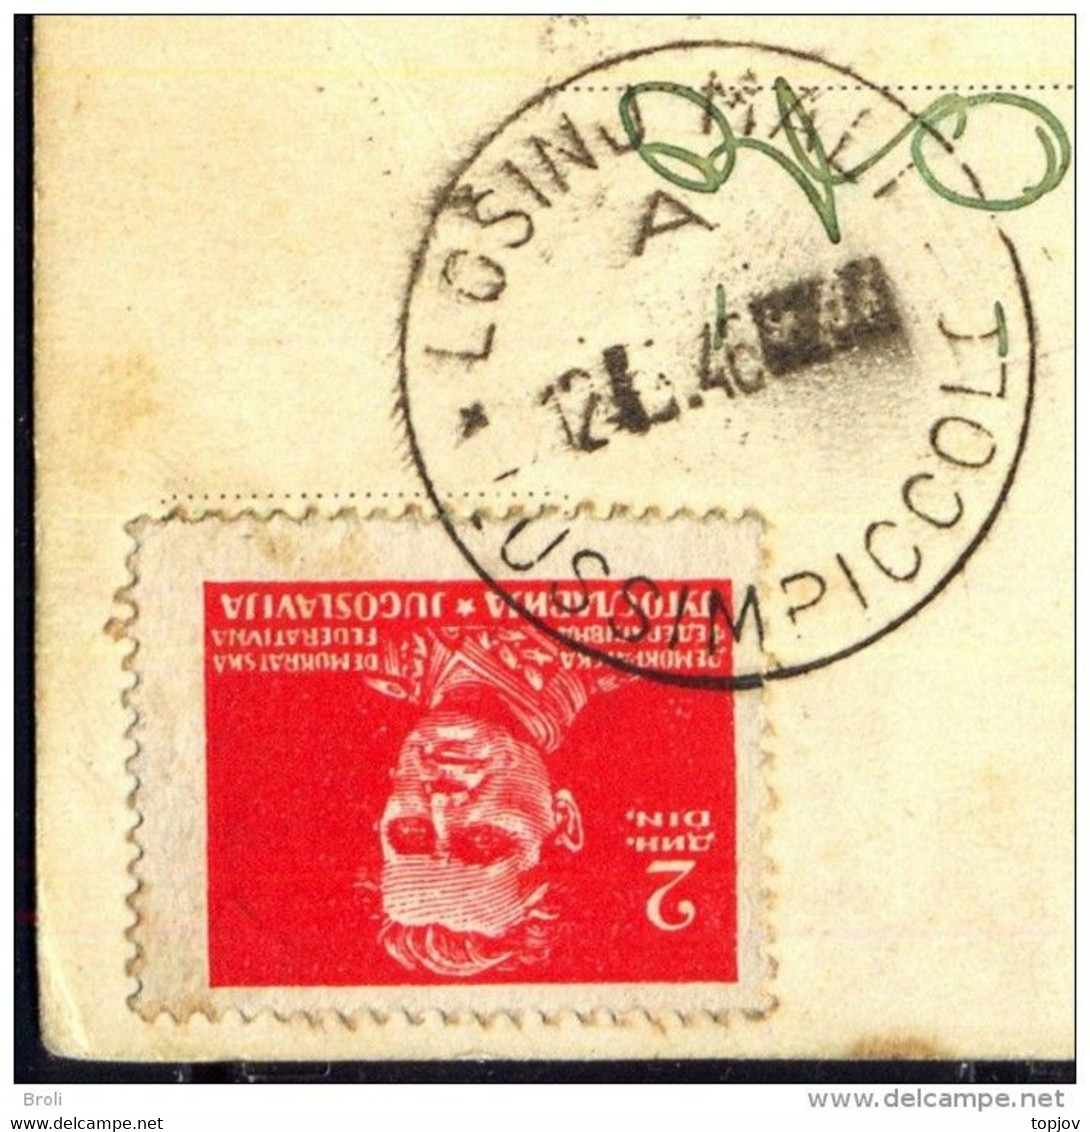 JUGOSLAVIA - ISTRIA - ZONA B - ERROR - Postmark "LOSINJ MALI - LUSSIMPICCOLO" - 1946 - EXTREM RARE - Storia Postale